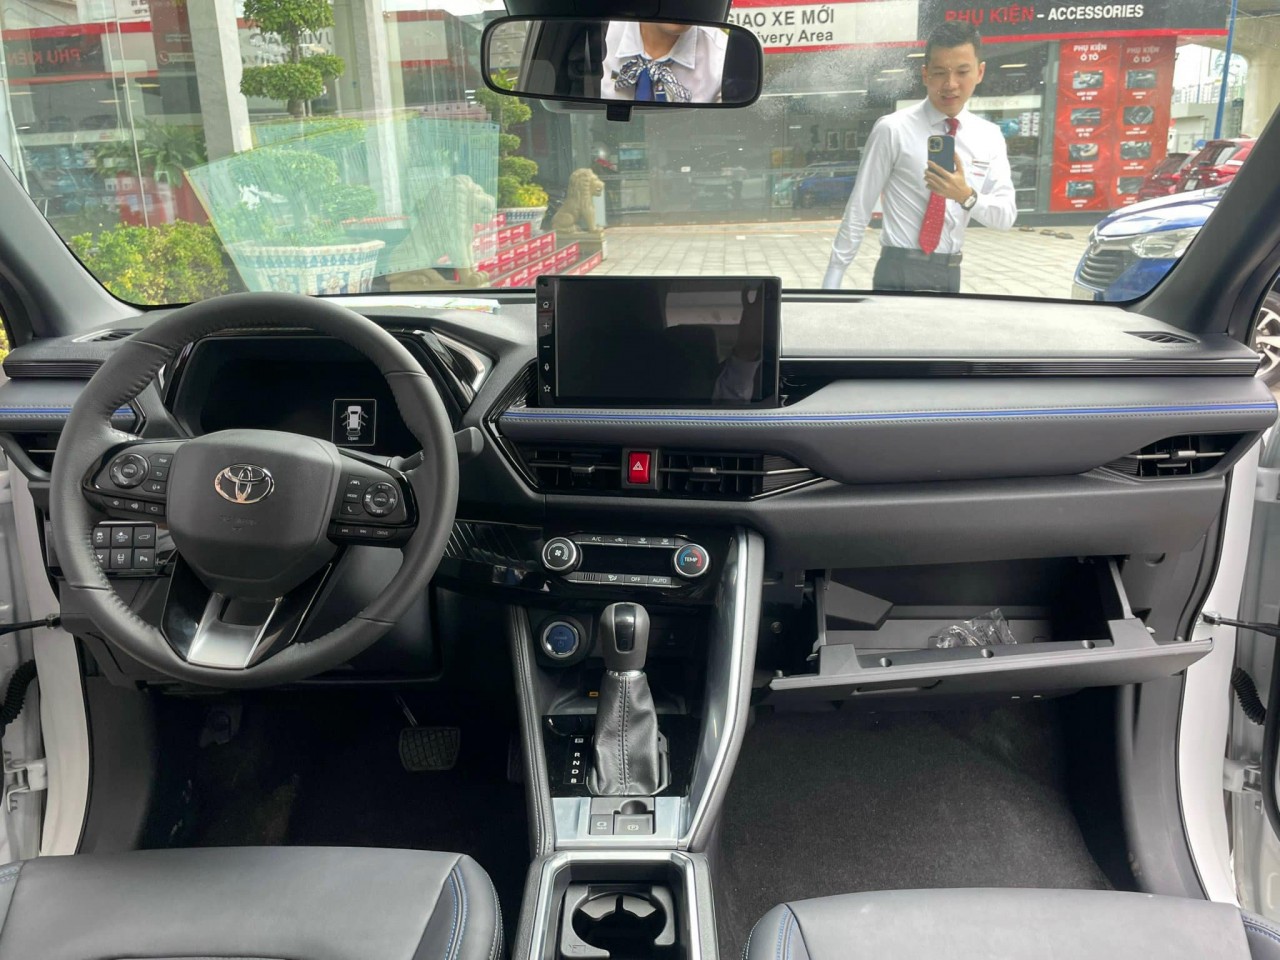 Toyota Yaris Cross có mặt tại đại lý, giá từ 740 triệu đồng